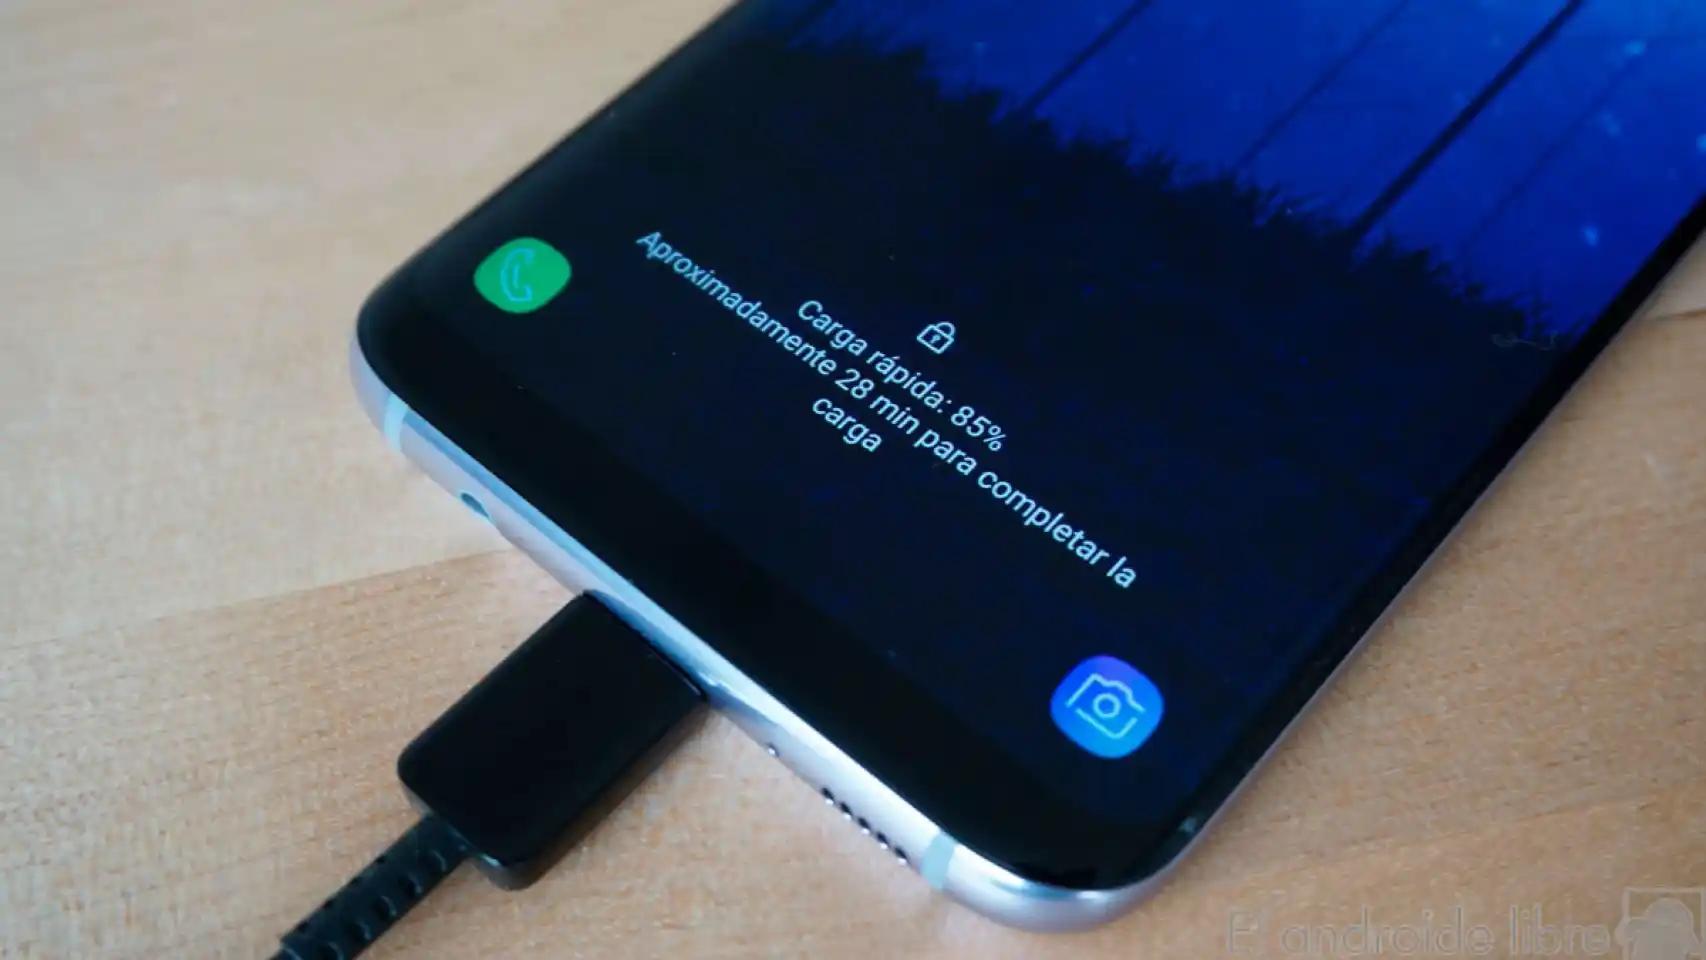 al cambiar bateria del samsung es posible que se bloquee - Por qué se bloquea el teléfono Samsung